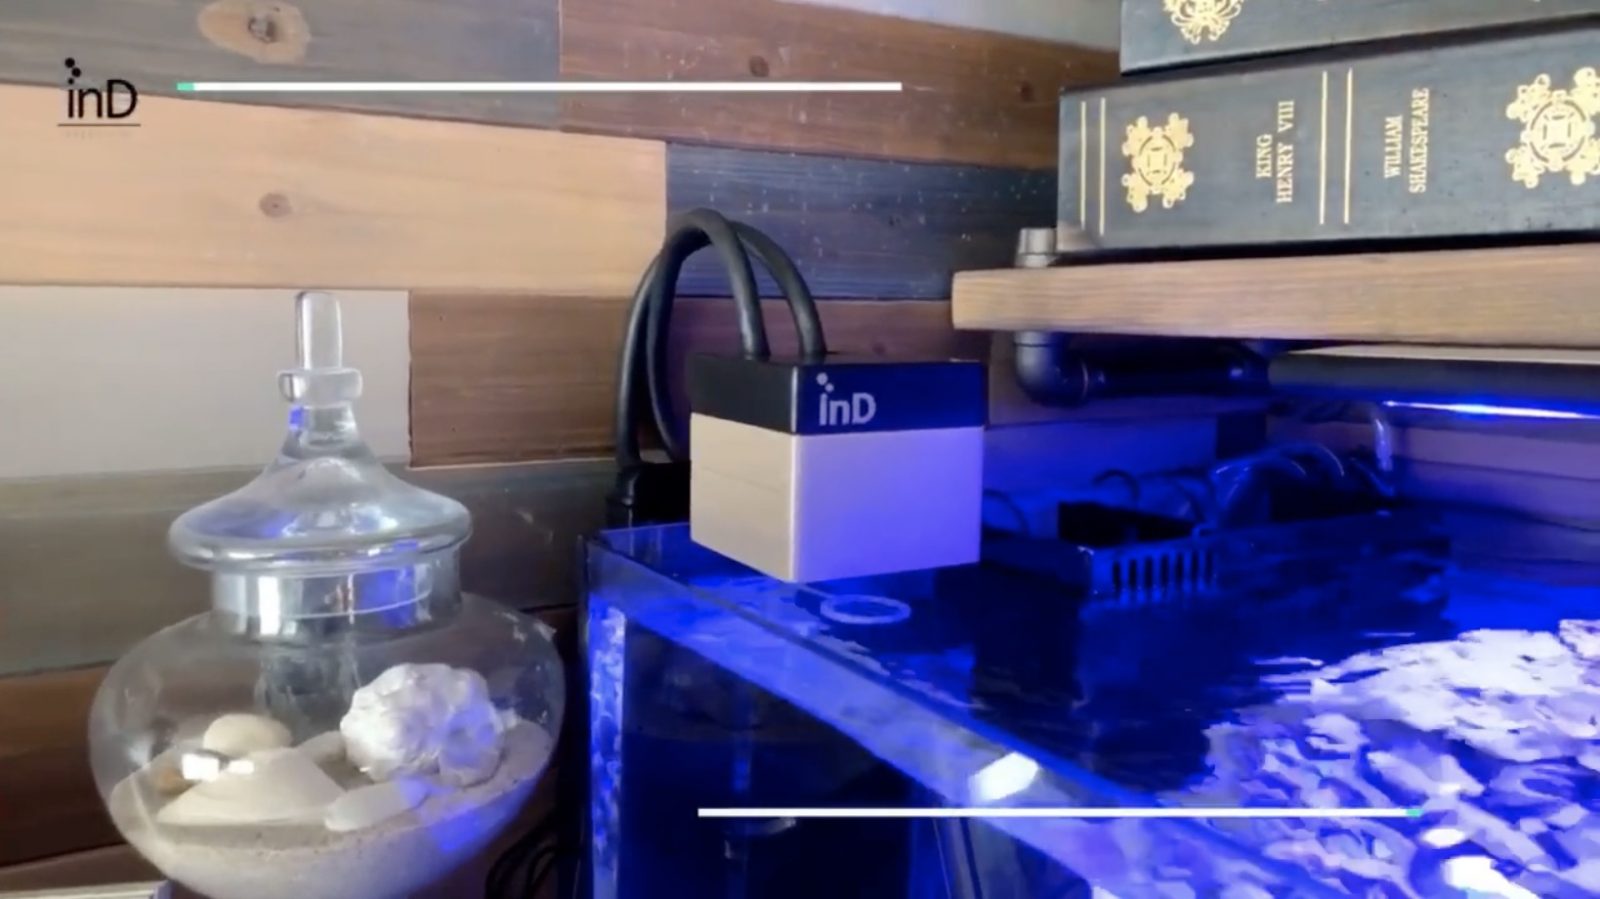 Der weltweit erste automatische Tiefkühlfischfutterautomat auf Kickstarter